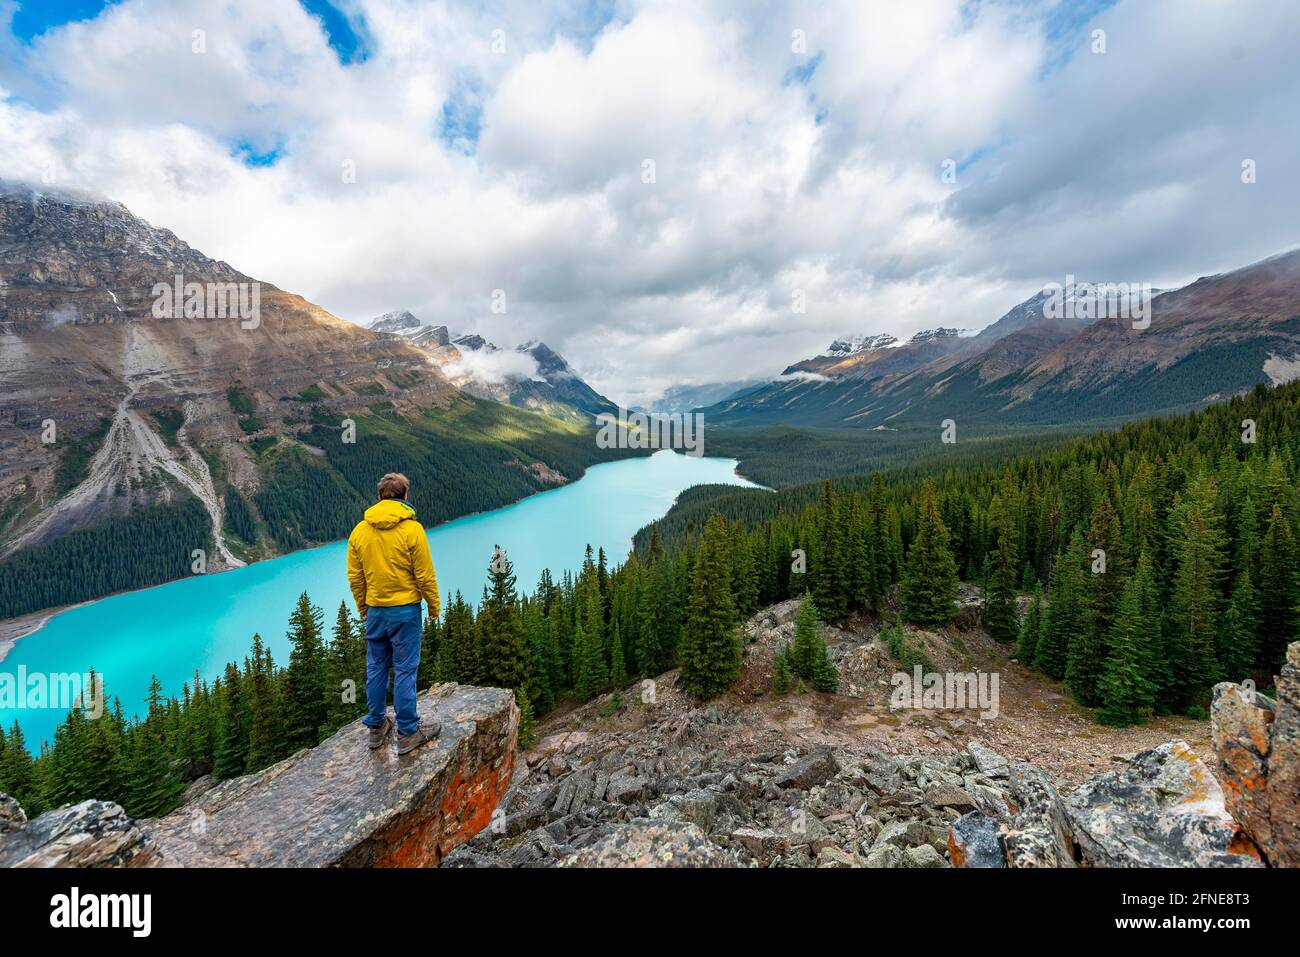 Randonneur regardant au loin, vue sur le lac glaciaire turquoise entouré de forêt, lac Peyto, montagnes Rocheuses, parc national Banff, Alberta Banque D'Images